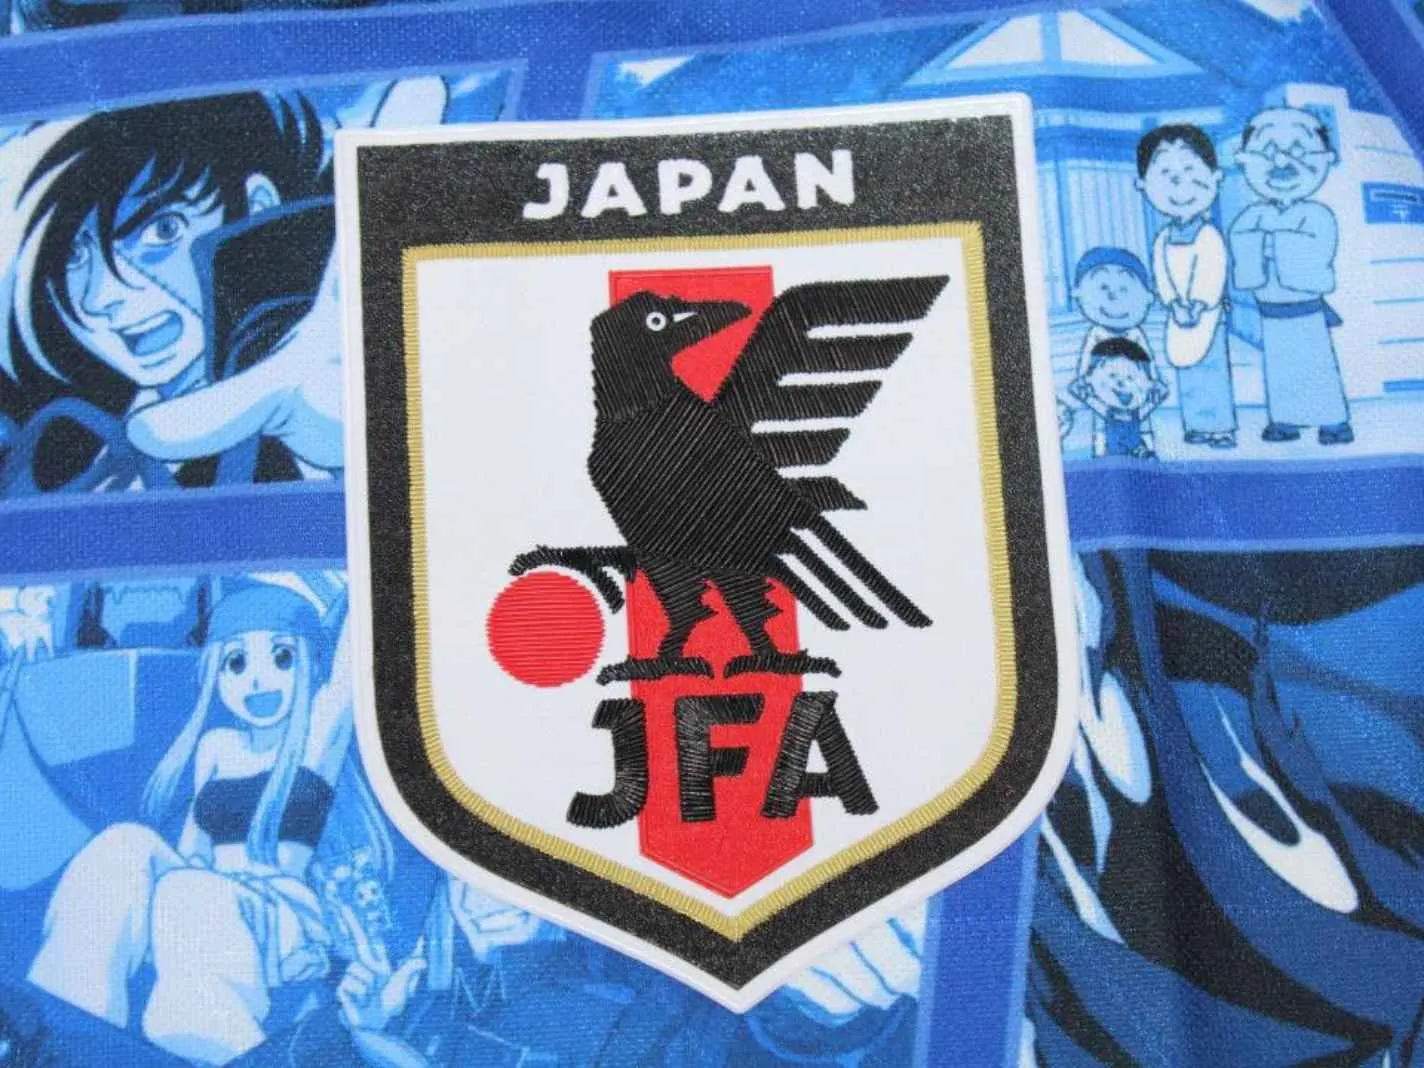 Manga-inspired Japan national team concept kit (1)